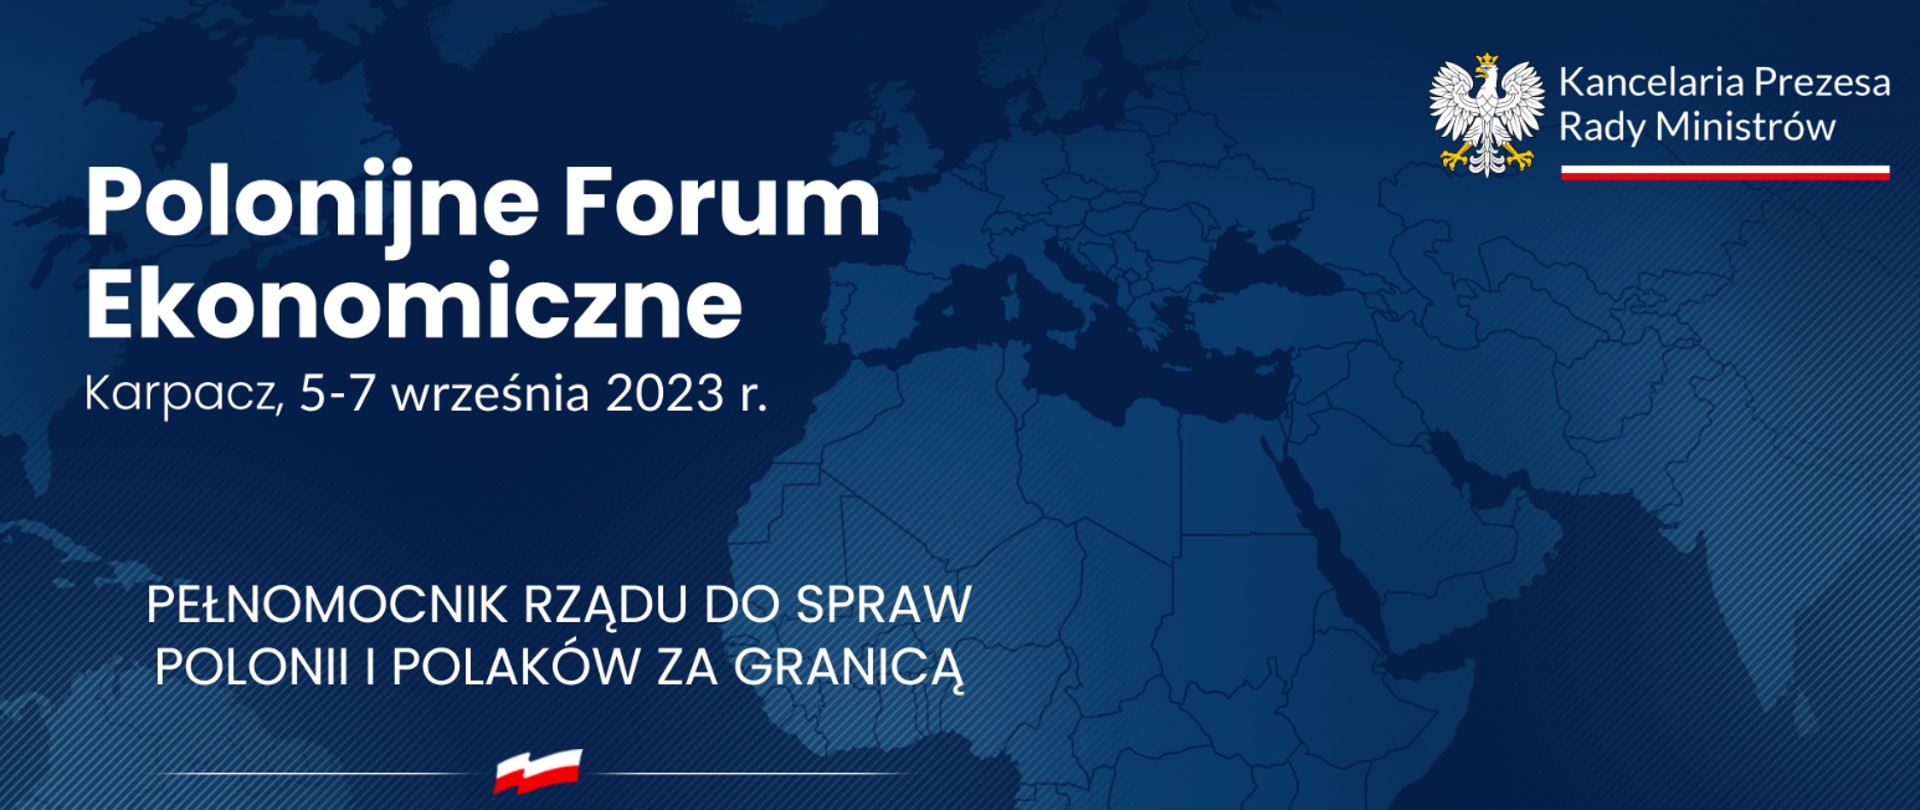 Polonijne Forum w Karpaczu